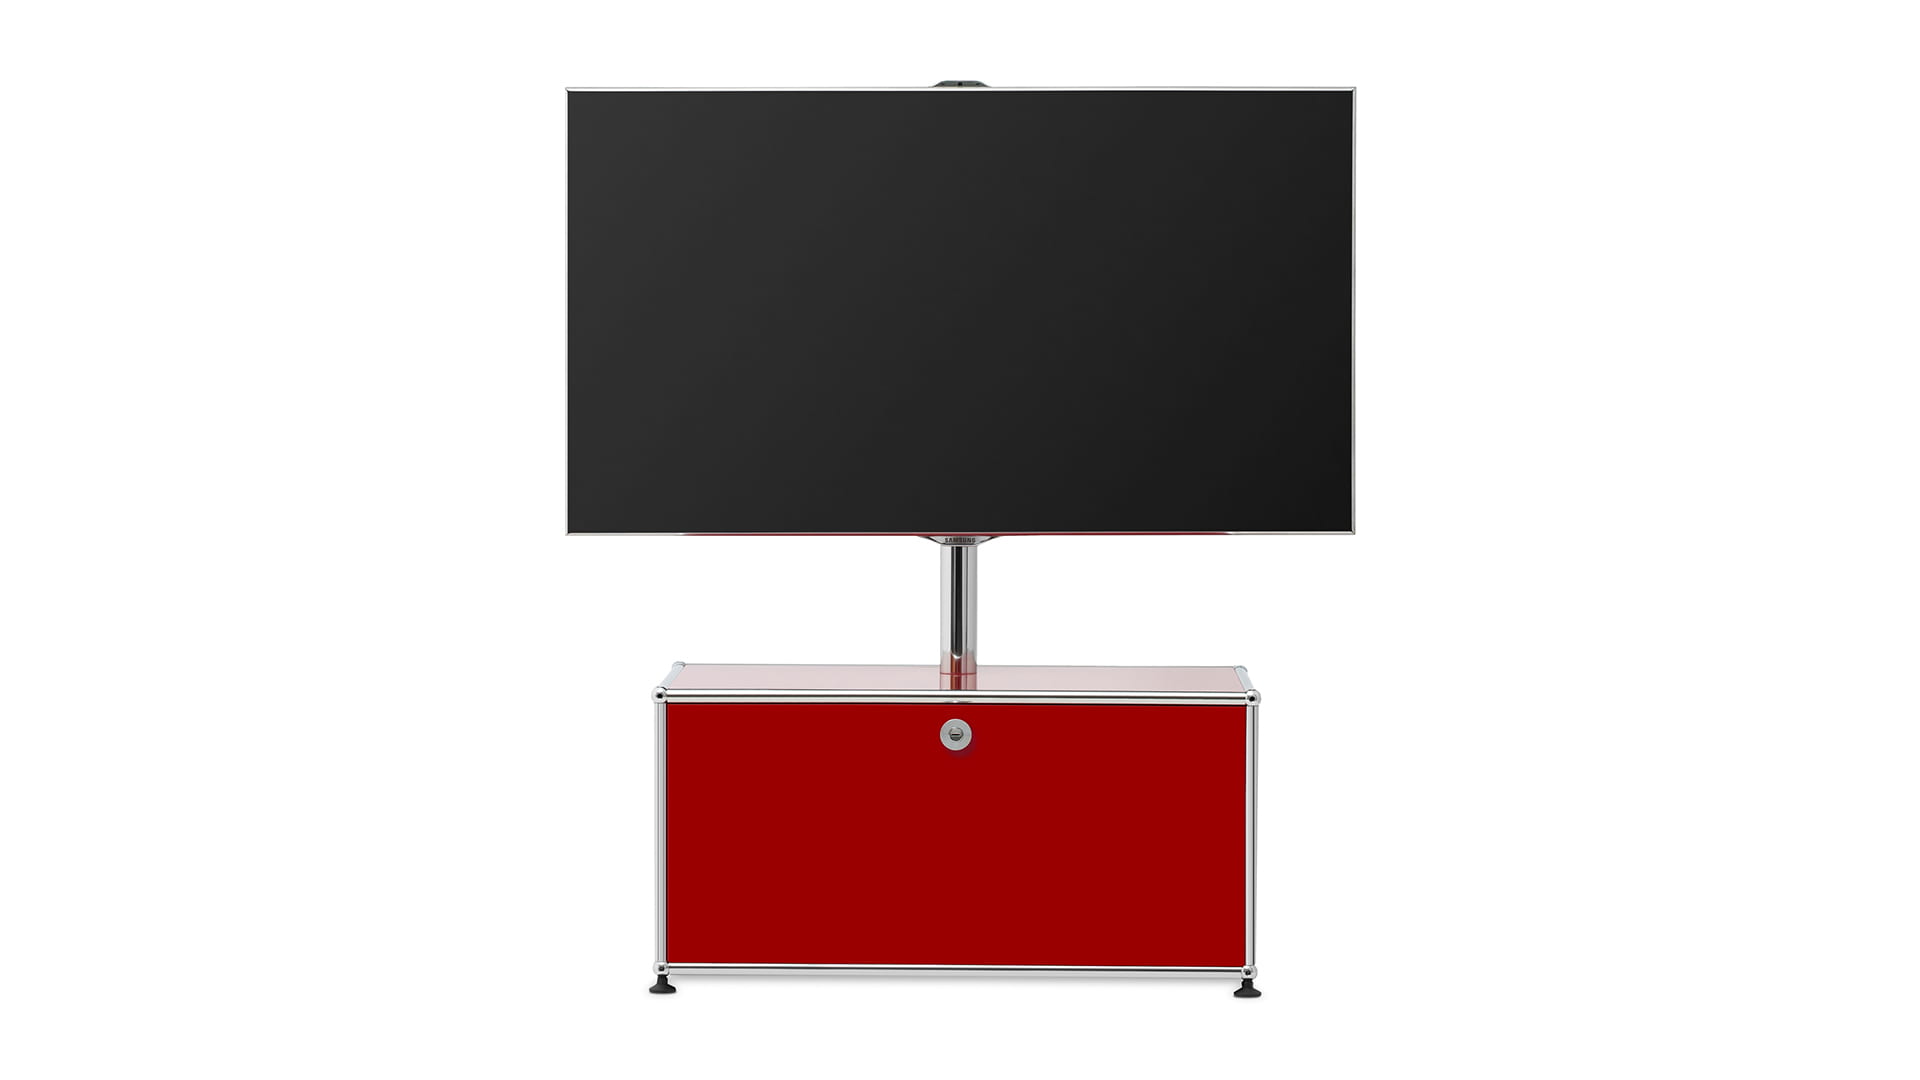 Stilvolles TV Board für Ihr Heimkino, Wohnzimmer oder die Lounge